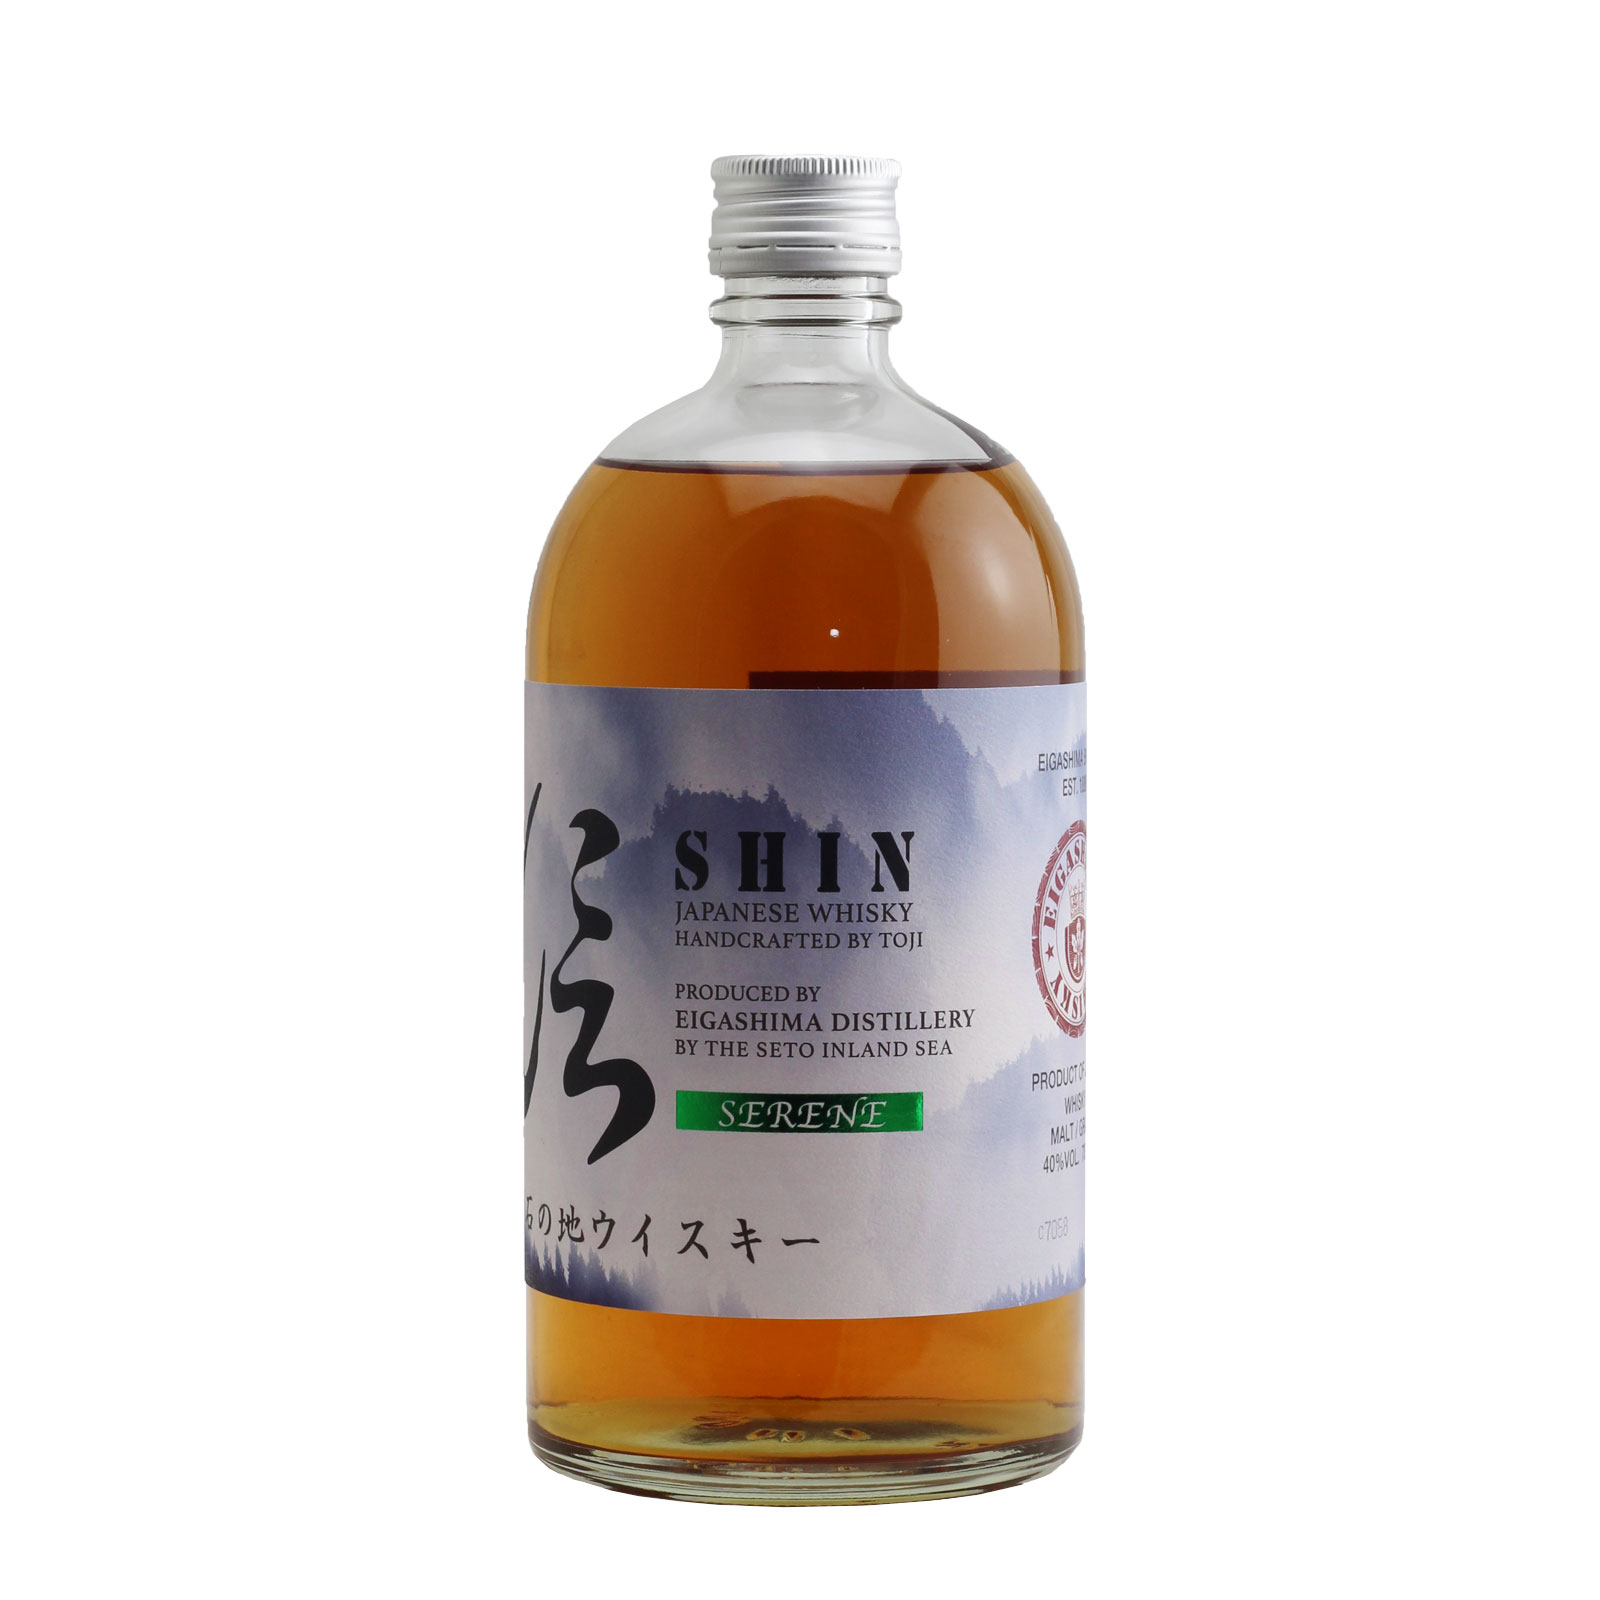 Shin Blended Whisky Serene 40% 700ml